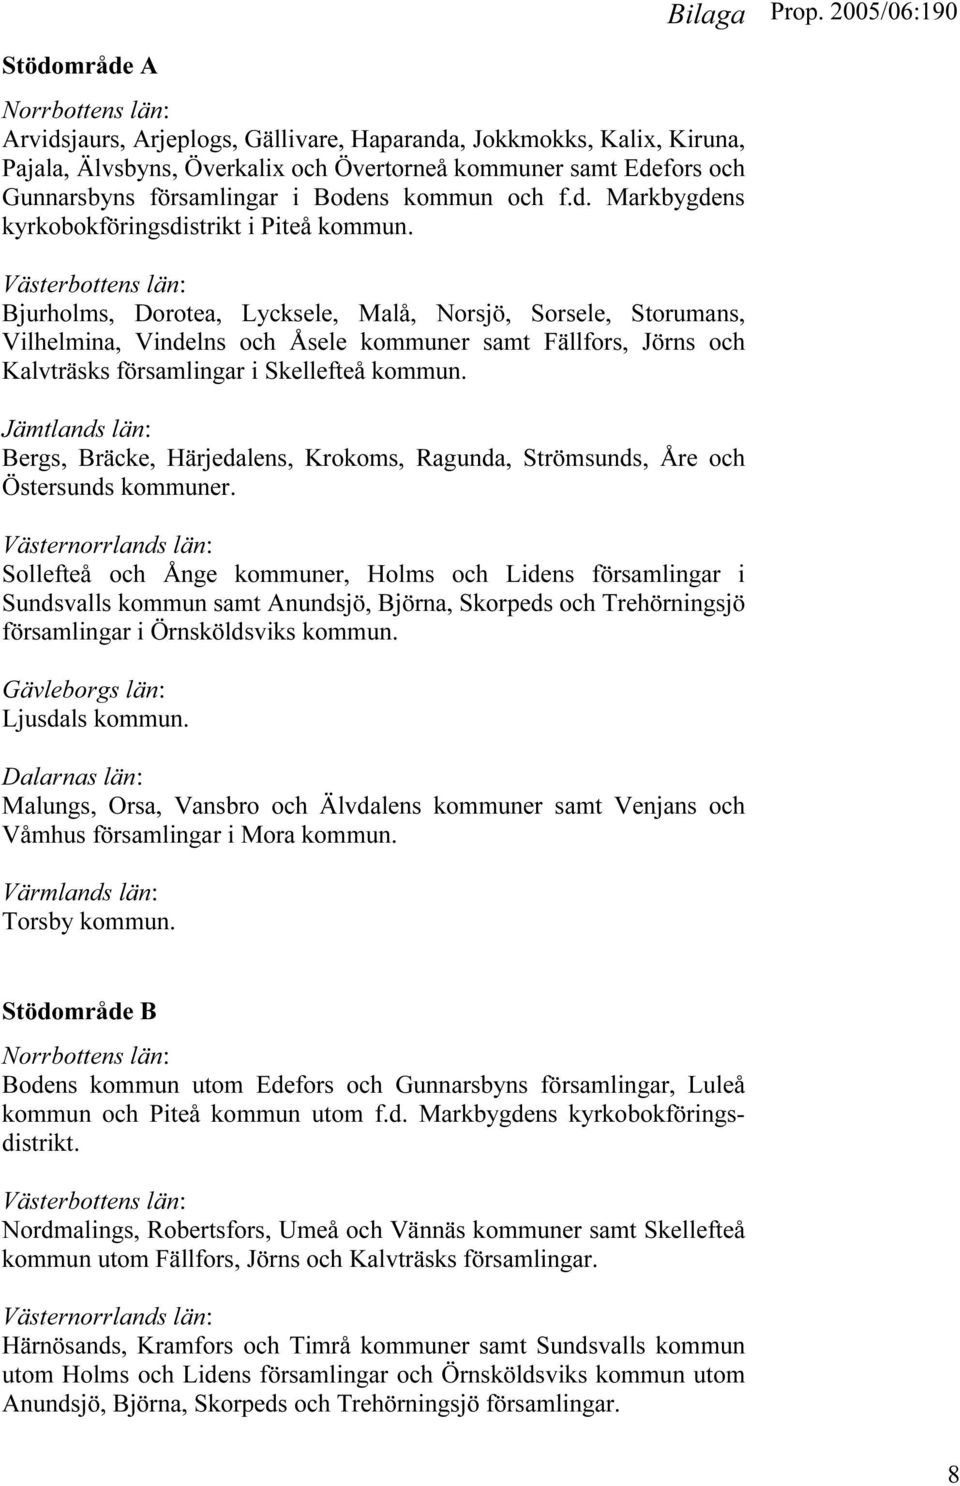 Västerbottens län: Bjurholms, Dorotea, Lycksele, Malå, Norsjö, Sorsele, Storumans, Vilhelmina, Vindelns och Åsele kommuner samt Fällfors, Jörns och Kalvträsks församlingar i Skellefteå kommun.